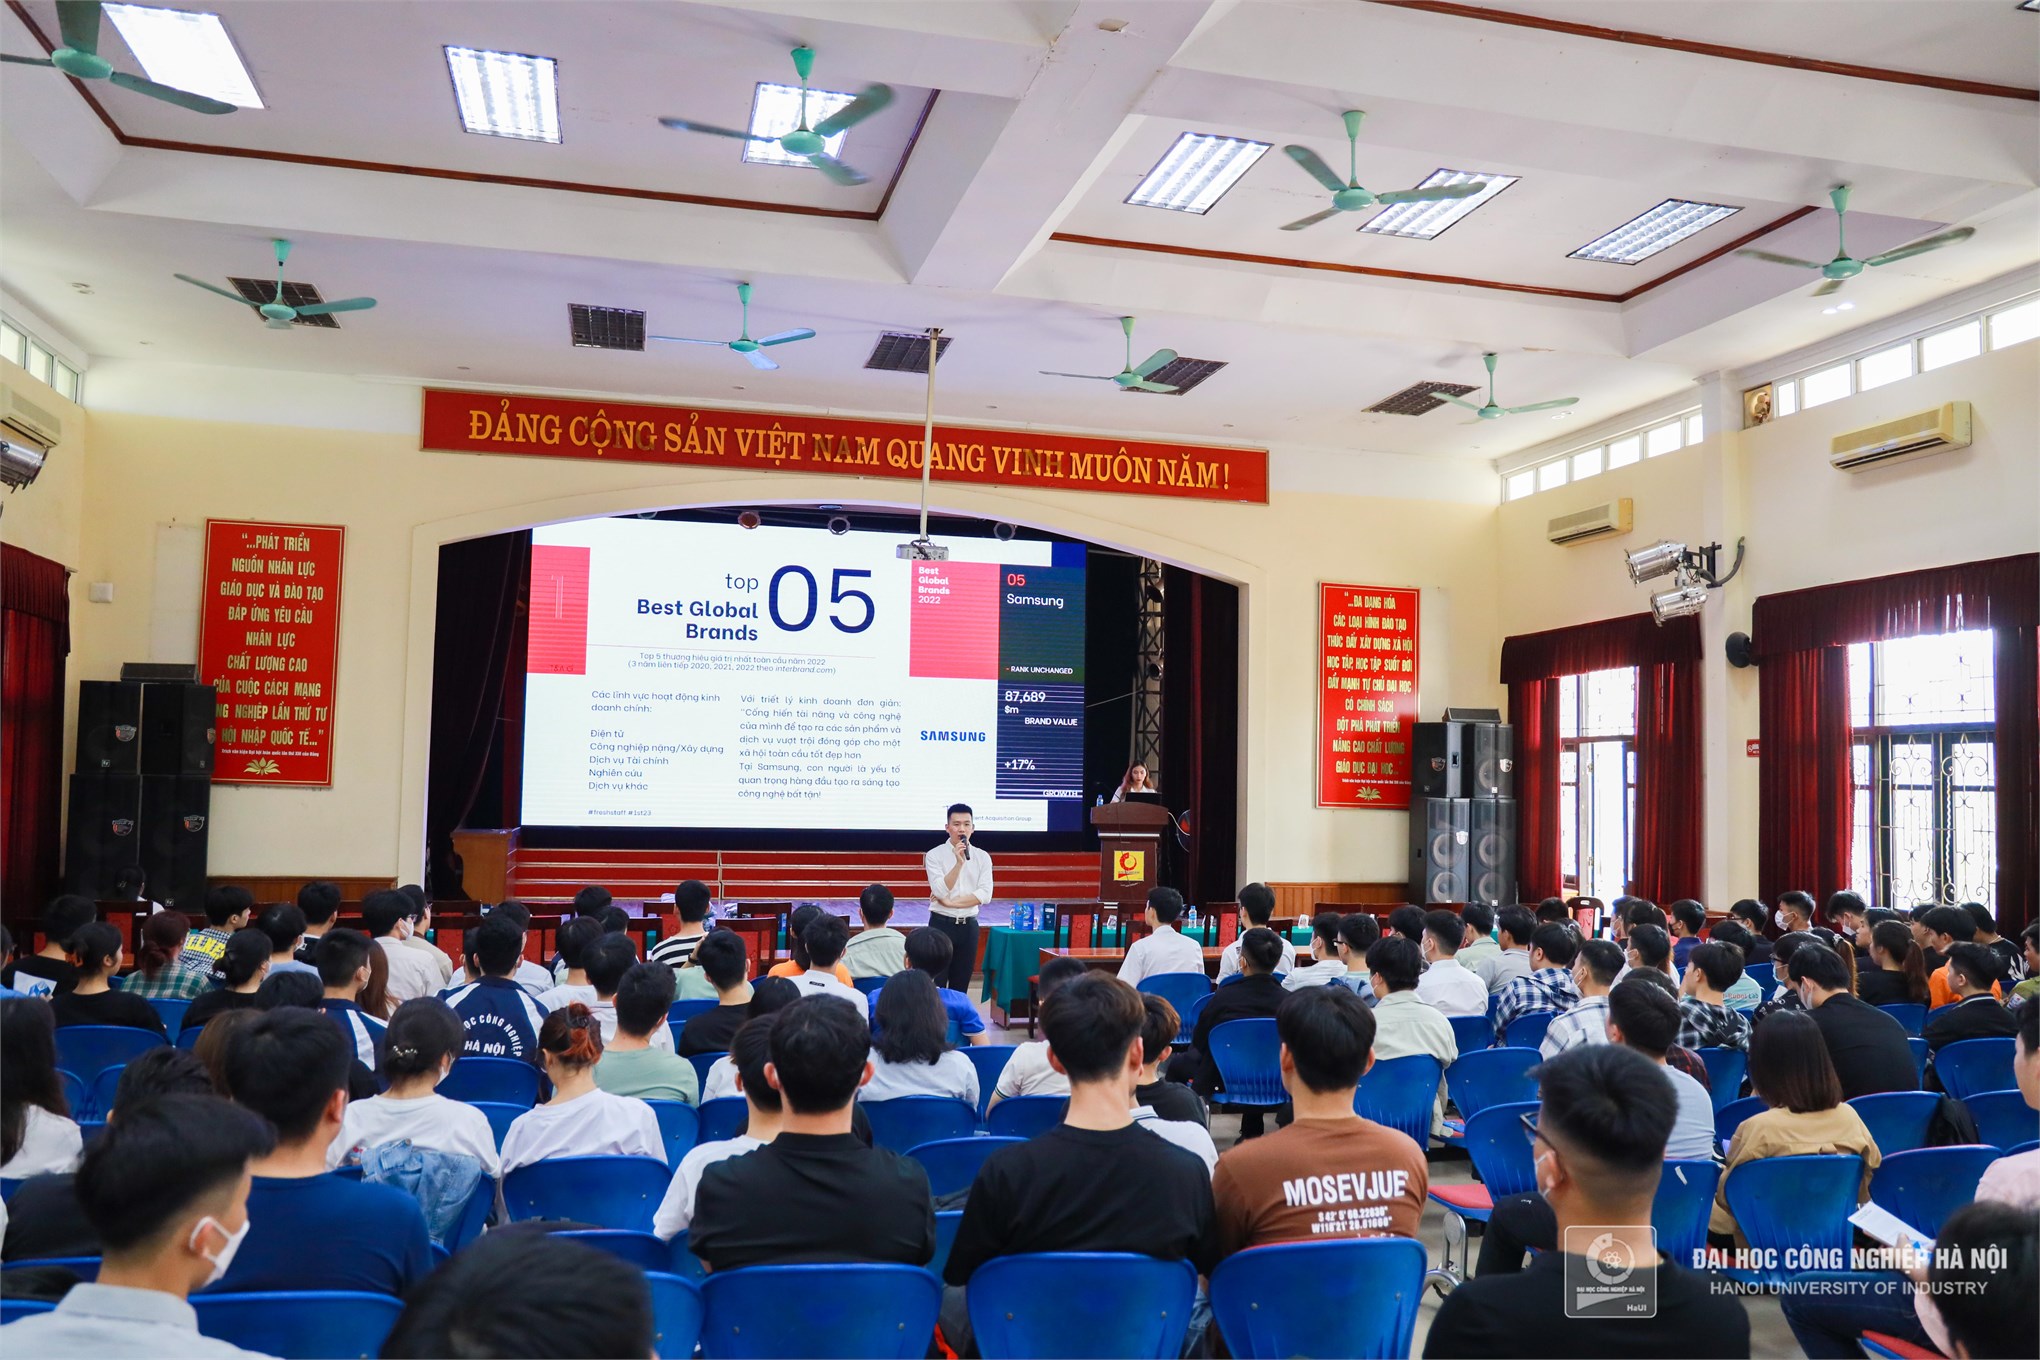 Chiến dịch tuyển dụng “Fresh Staff” – Biến giấc mơ thành hiện thực với Samsung Việt Nam